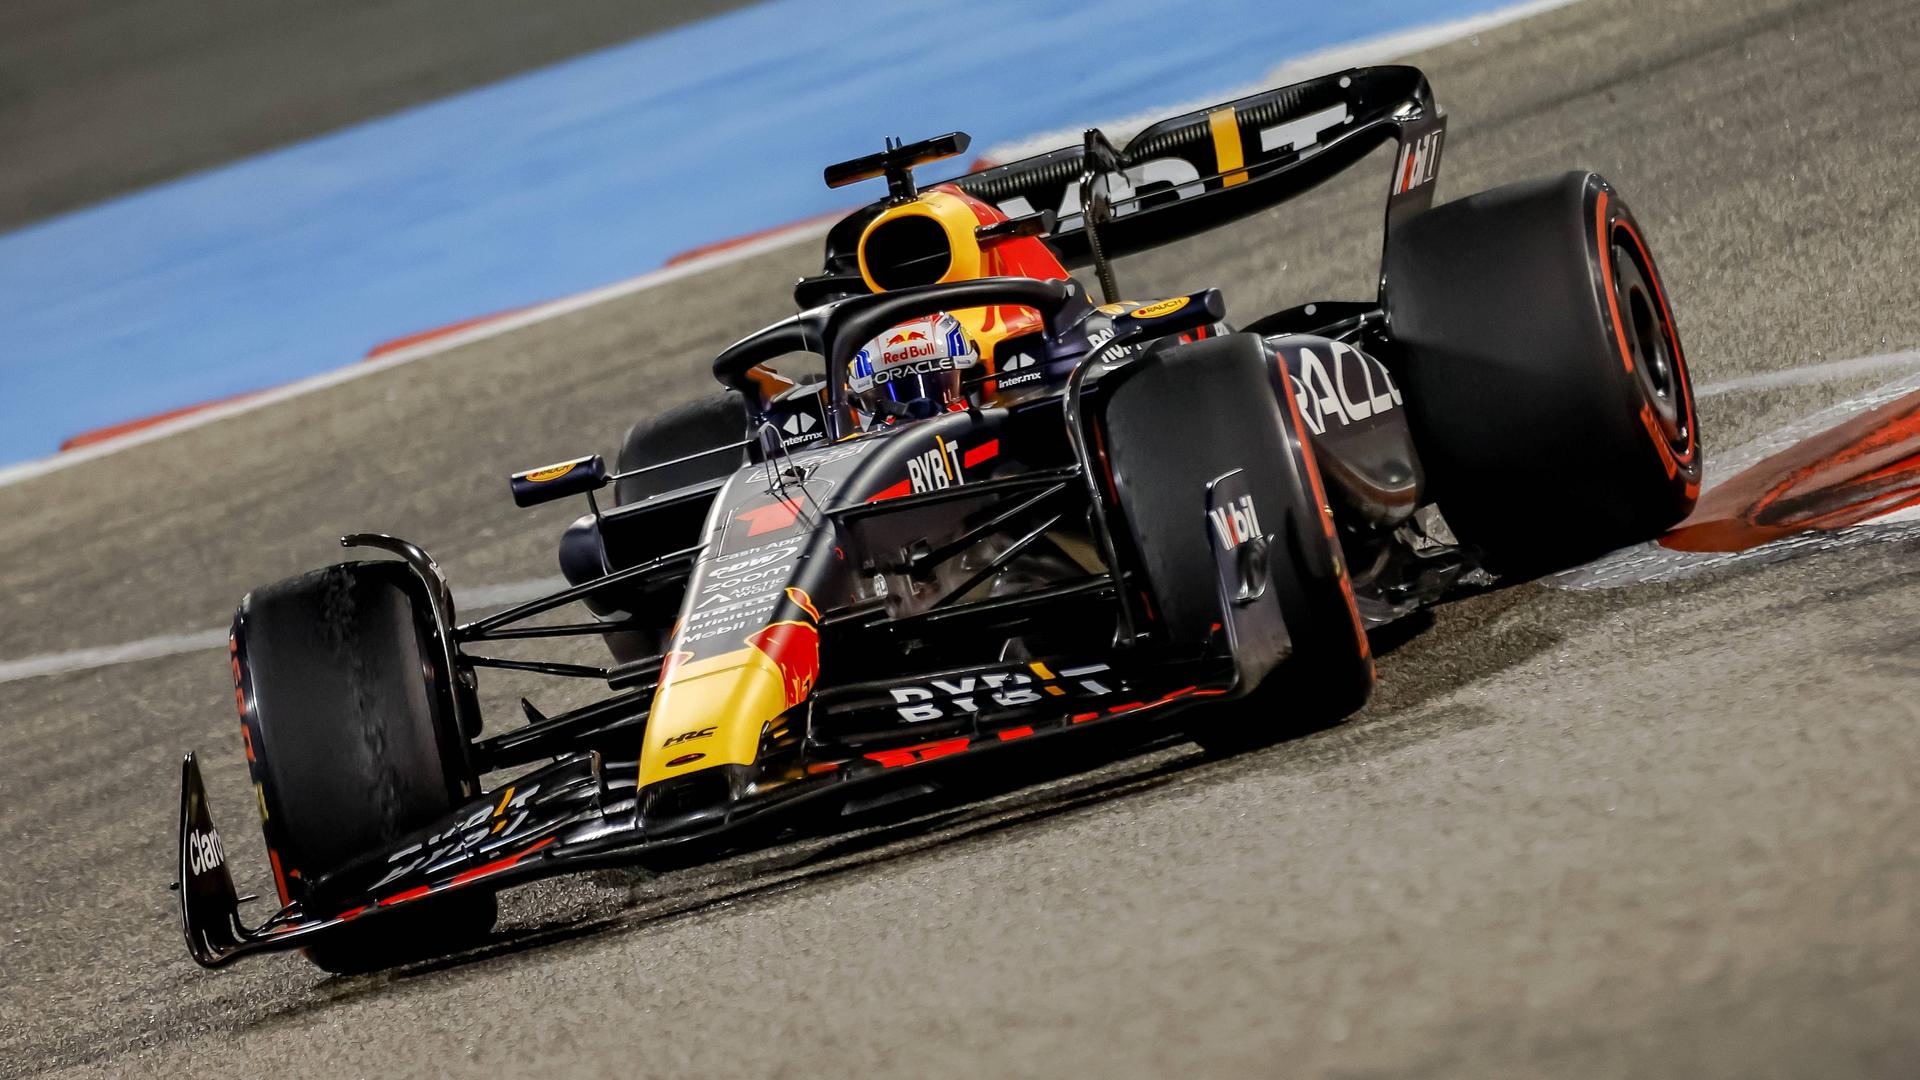 Formel-1-Fahrer Max Verstappen steuert seinen Rennwagen durch eine Kurve.